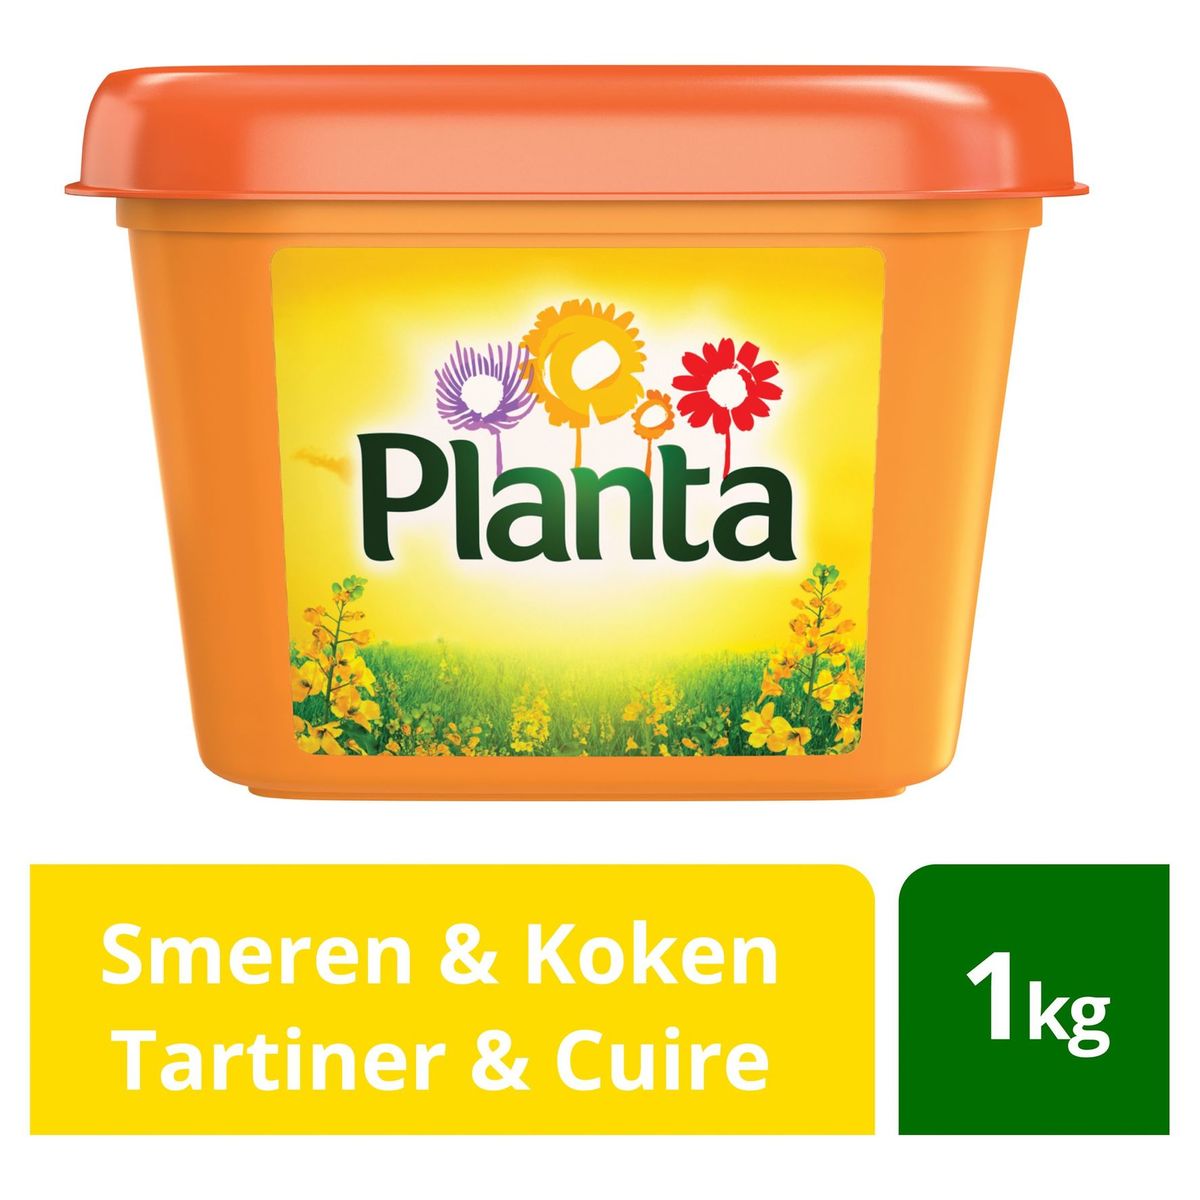 Planta | Smeren & Bakken | Vitamines A,D,E | 1kg